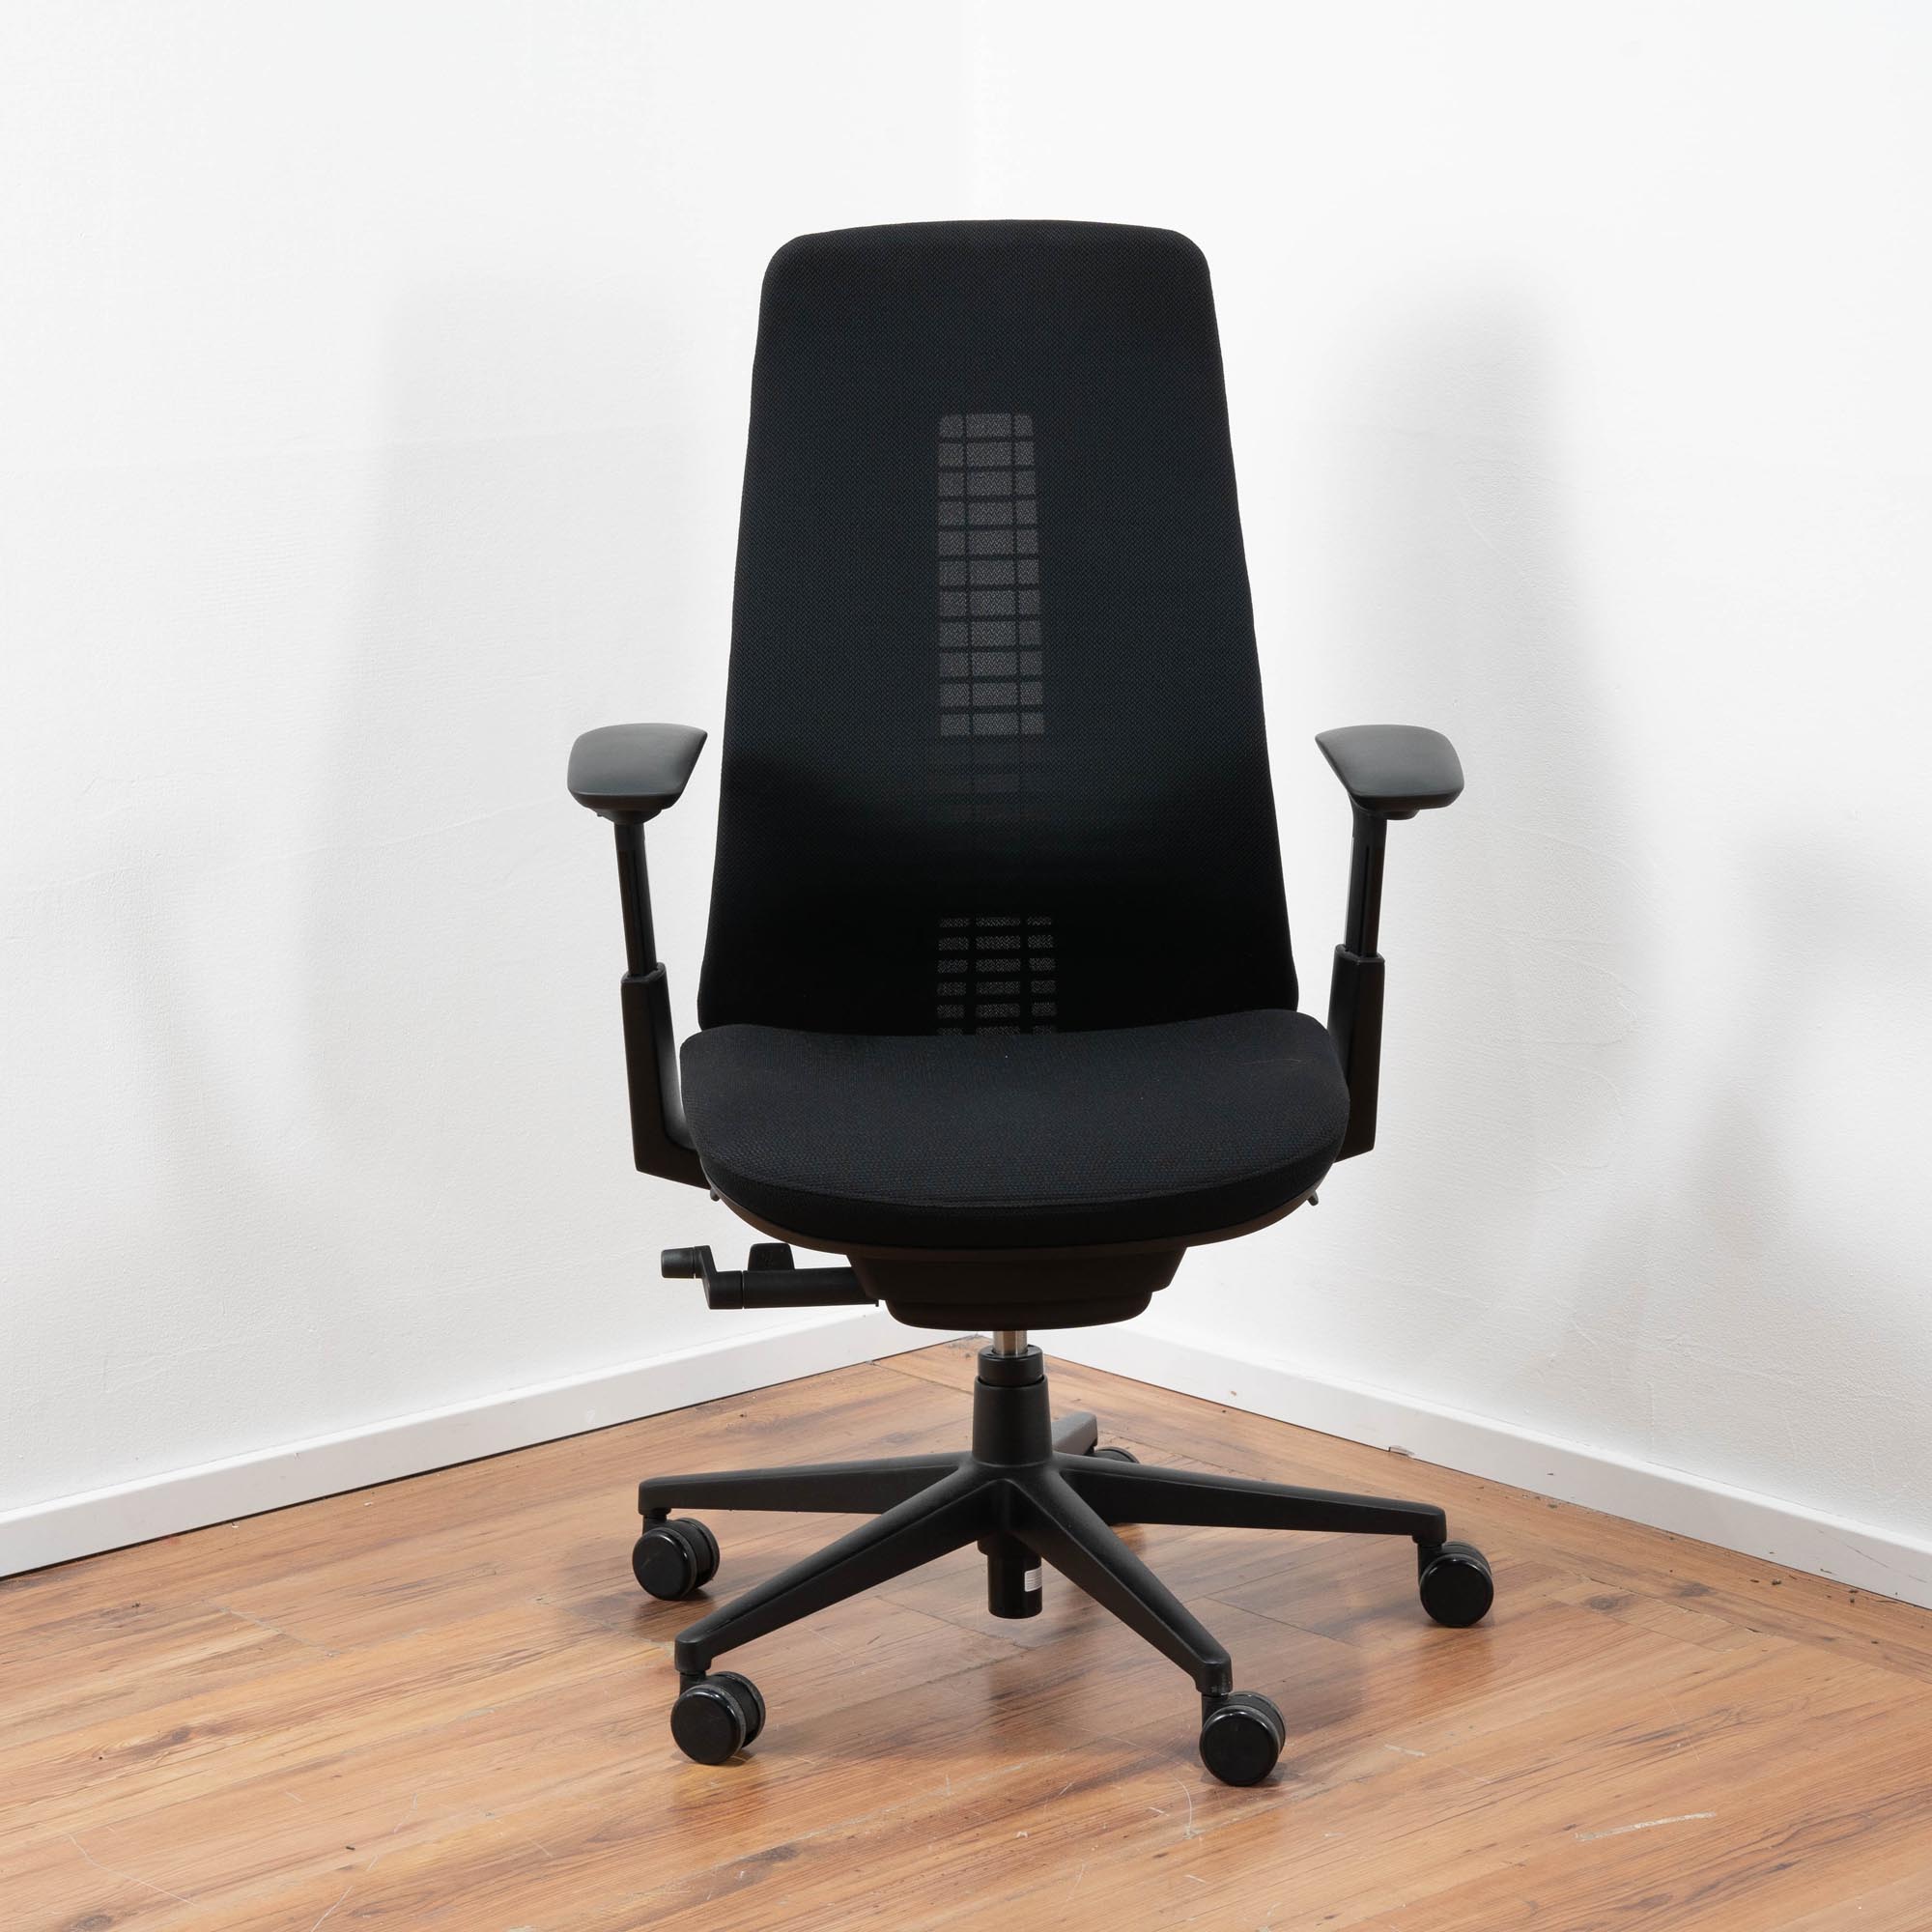 Haworth "Fern" Bürodrehstuhl Polster schwarz - Netz-Rückenlehne schwarz mit einstellbarer Lordosen Stütze - 3D Armlehnen 